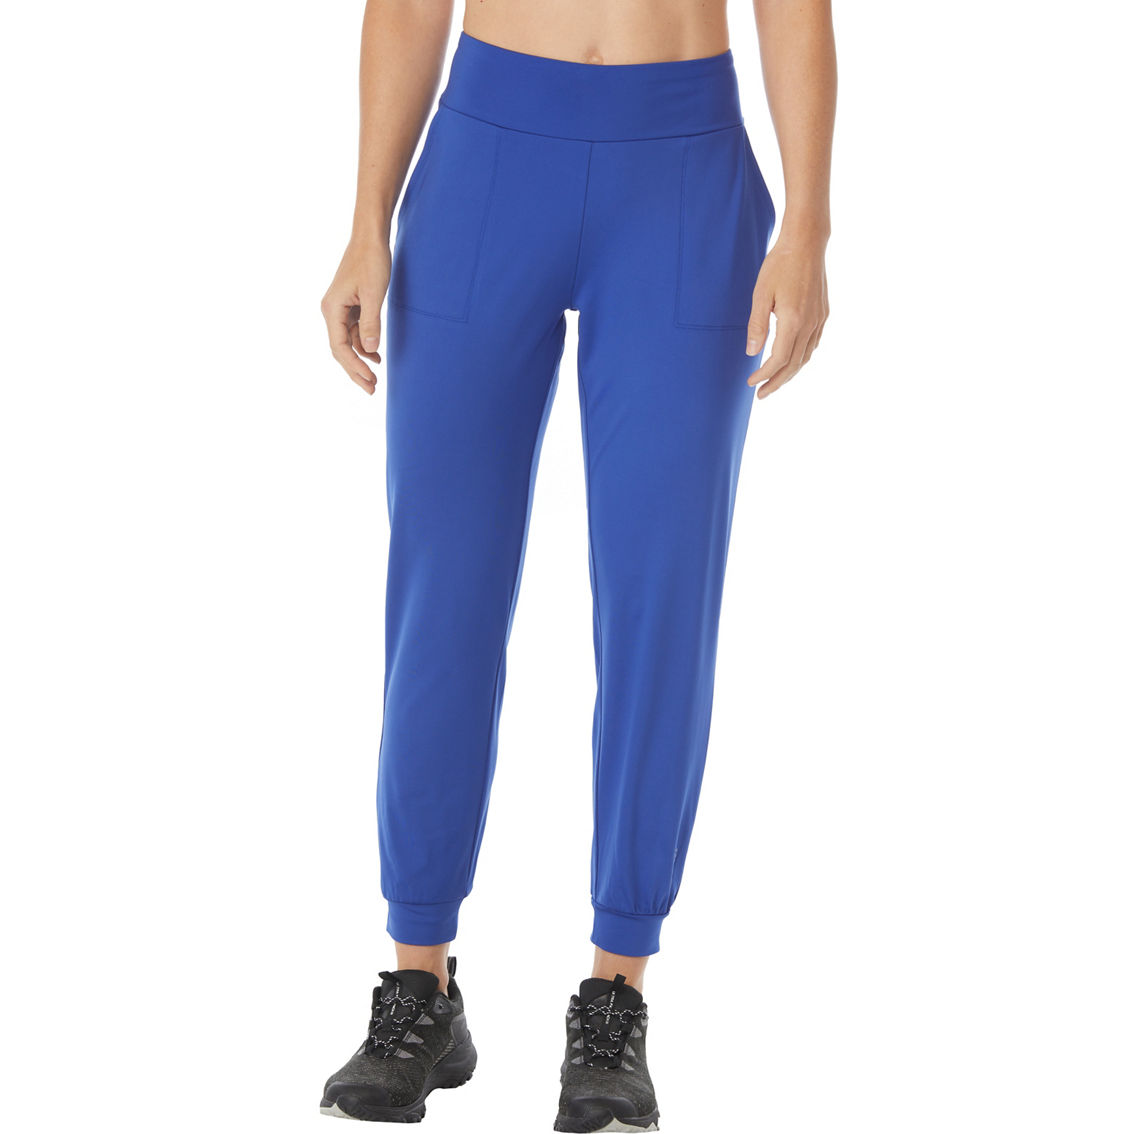 Pbx Pro Jogger Pants | Pants & Capris | Clothing & Accessories | Shop ...